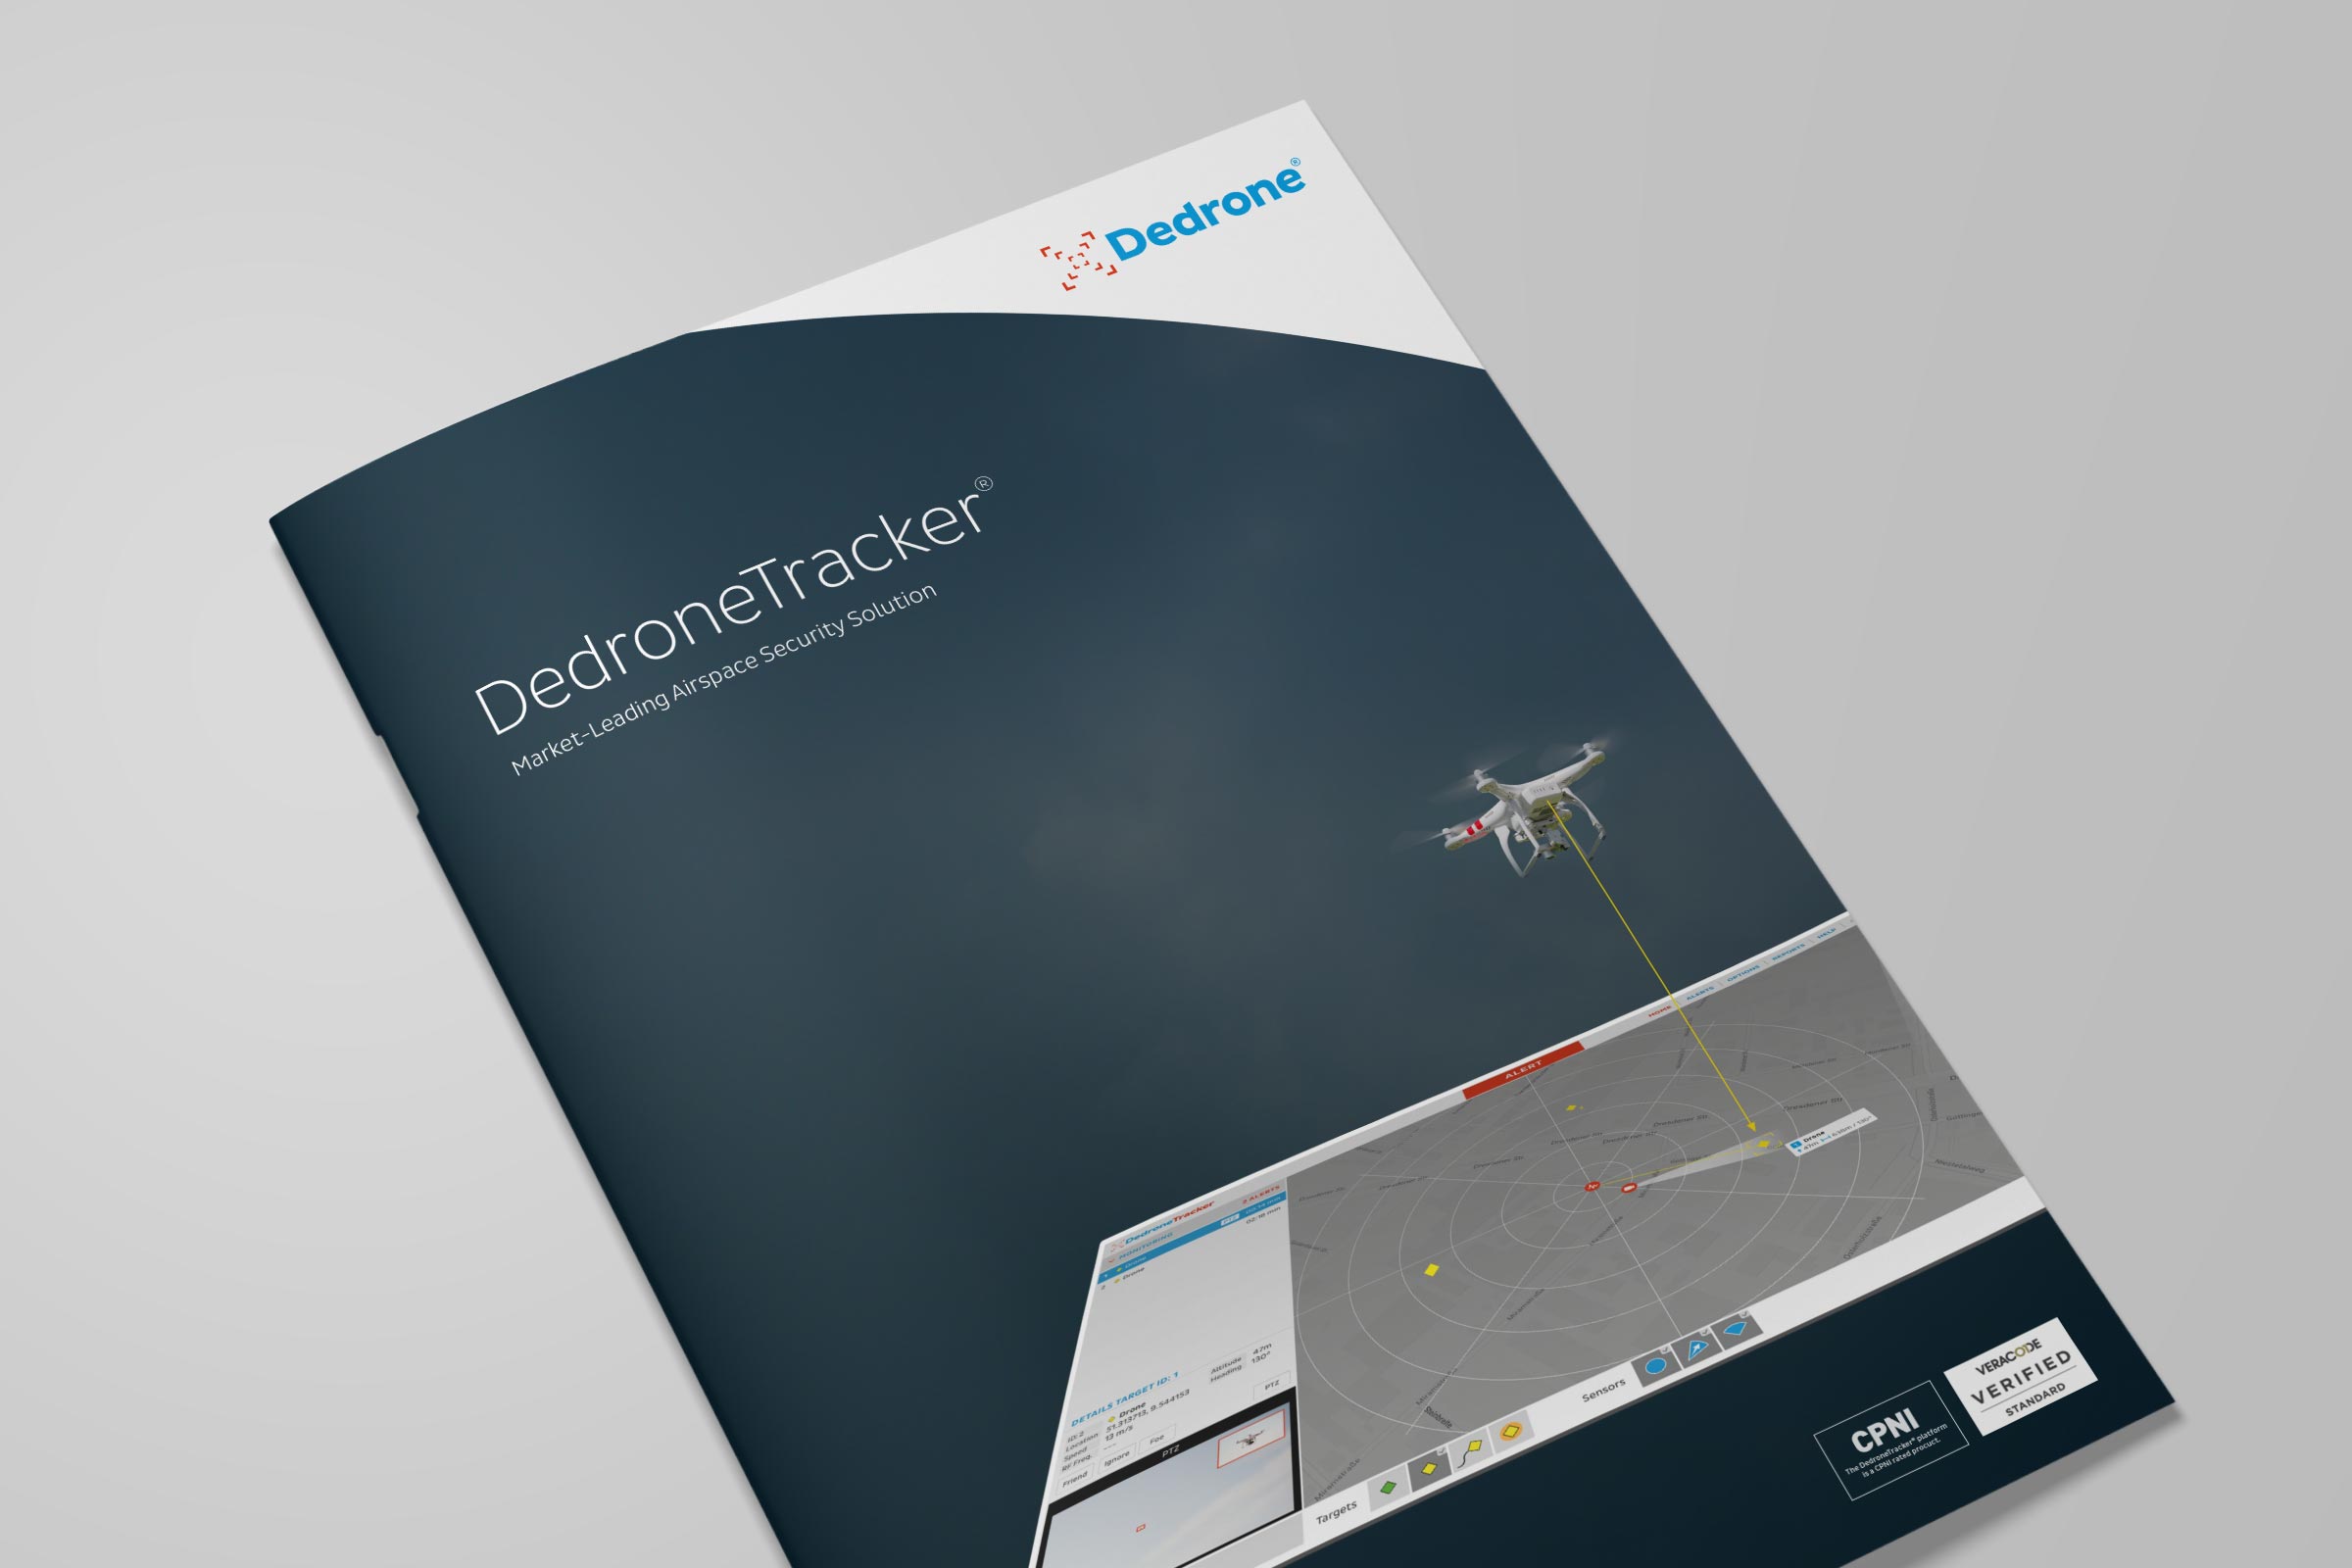 dedrone-flyer-cover-software-v4